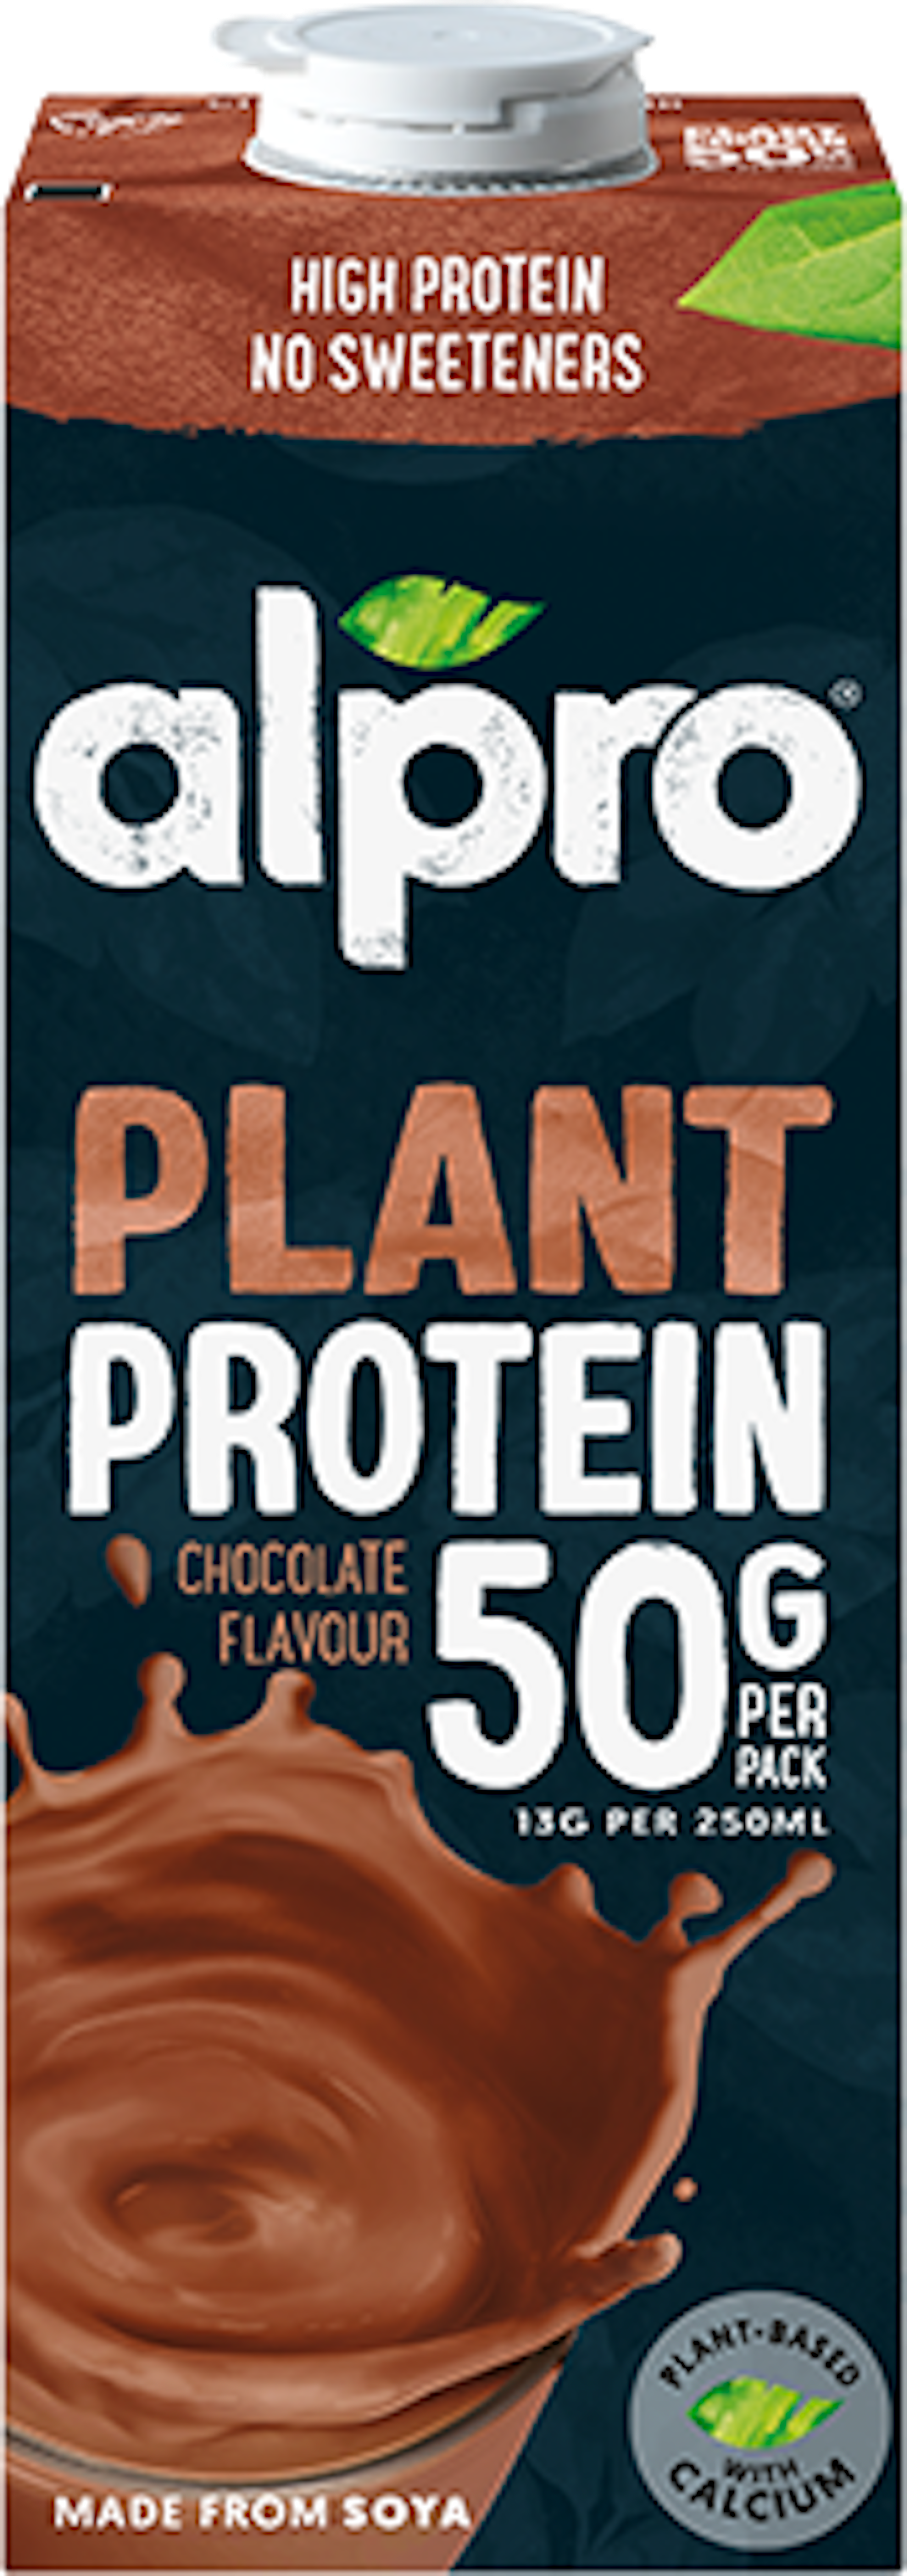 Alpro Protein Cioccolato